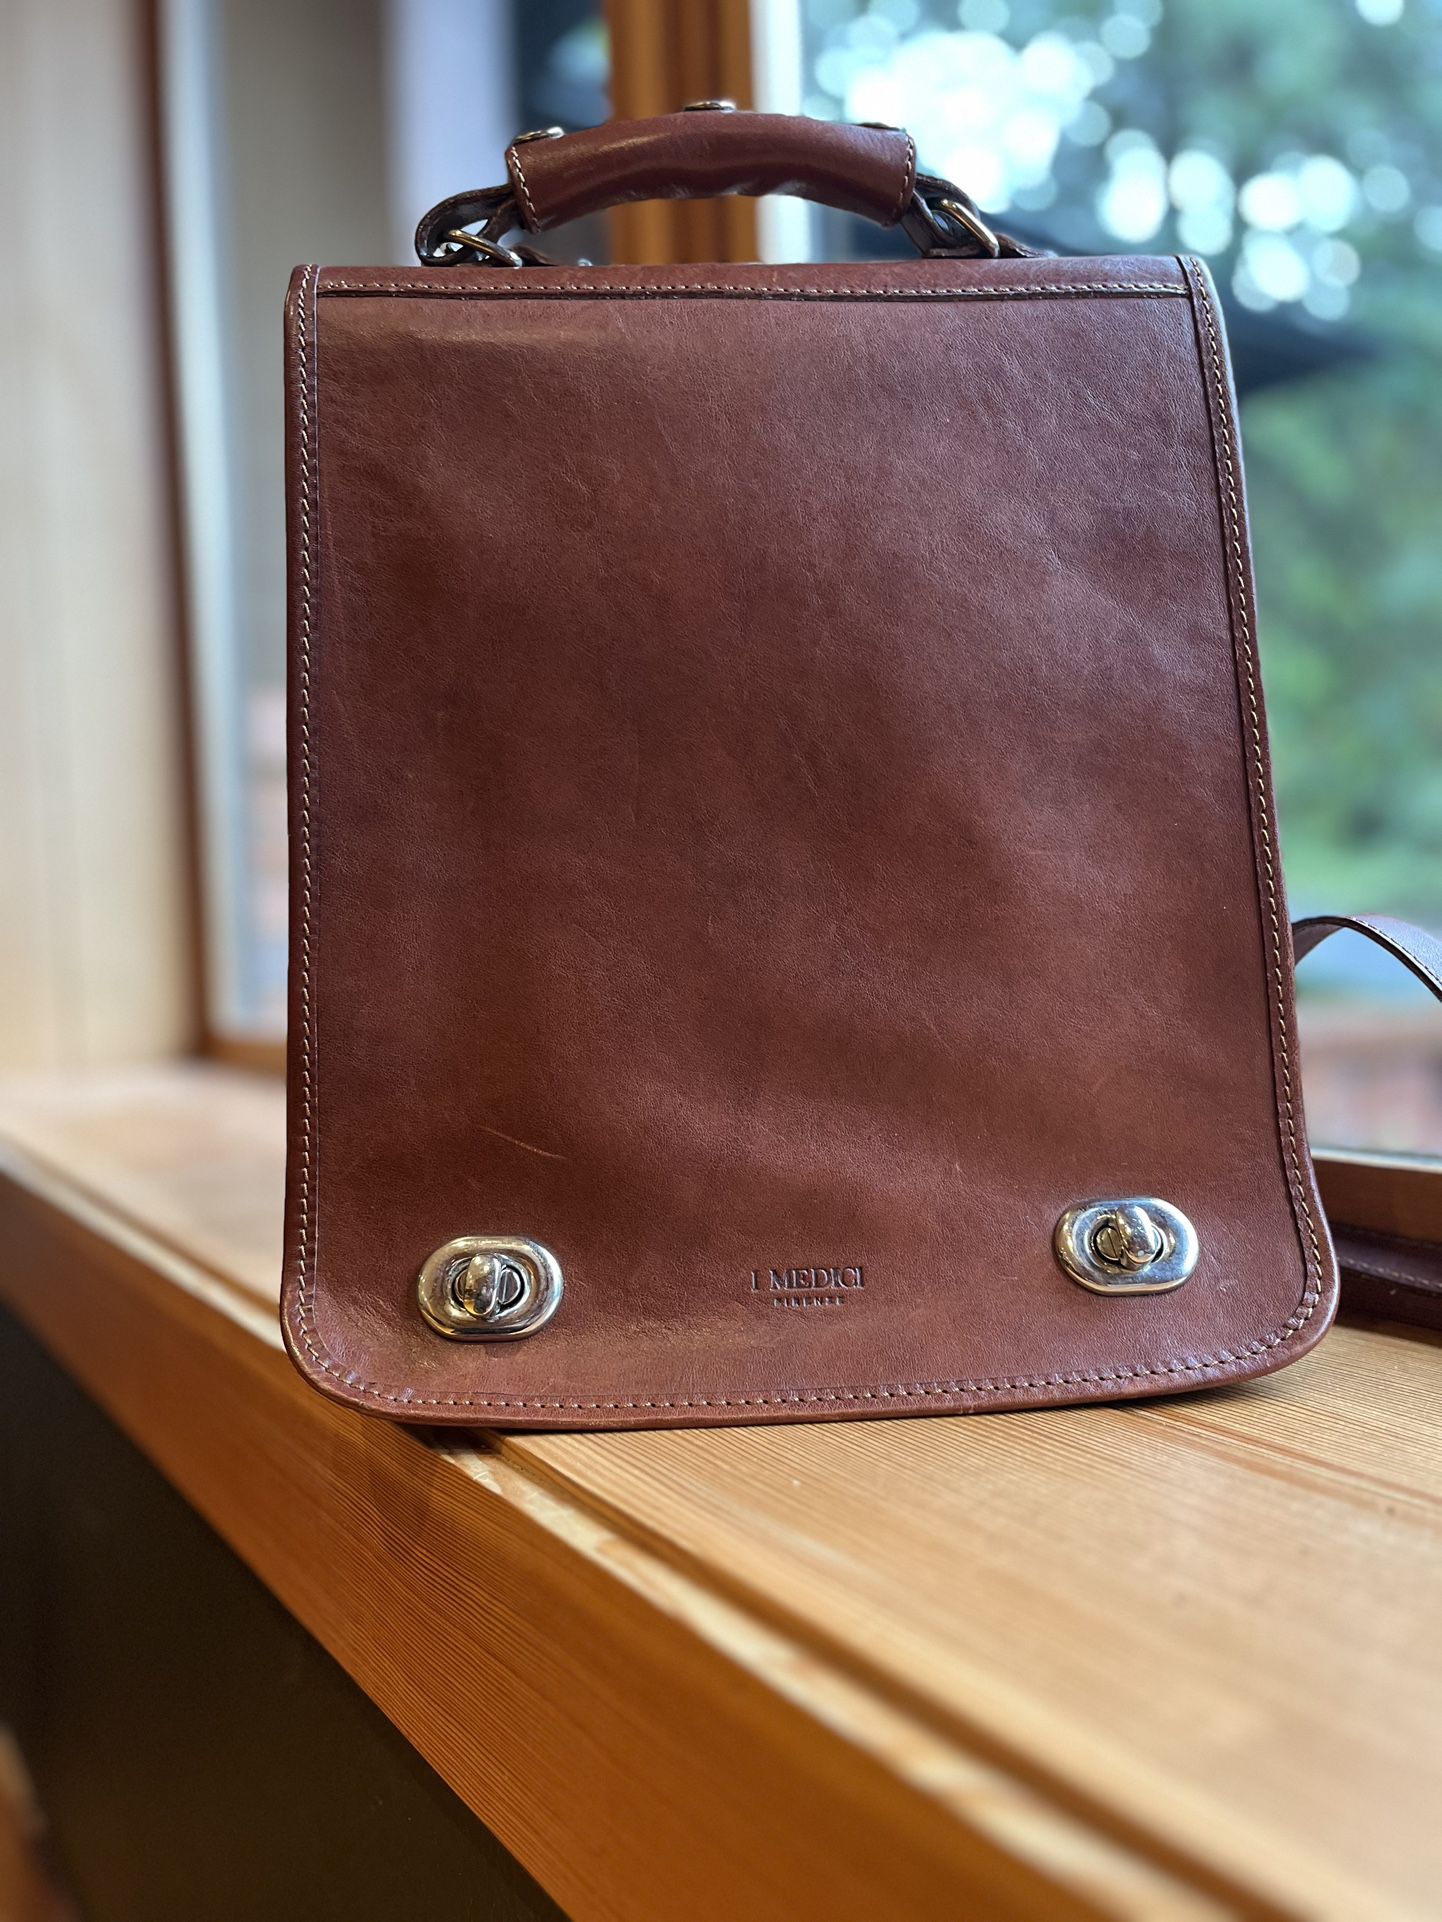  I Medici Bags | I Medici Firenze Messenger Bag Crossbody Brown Leather Satchel 